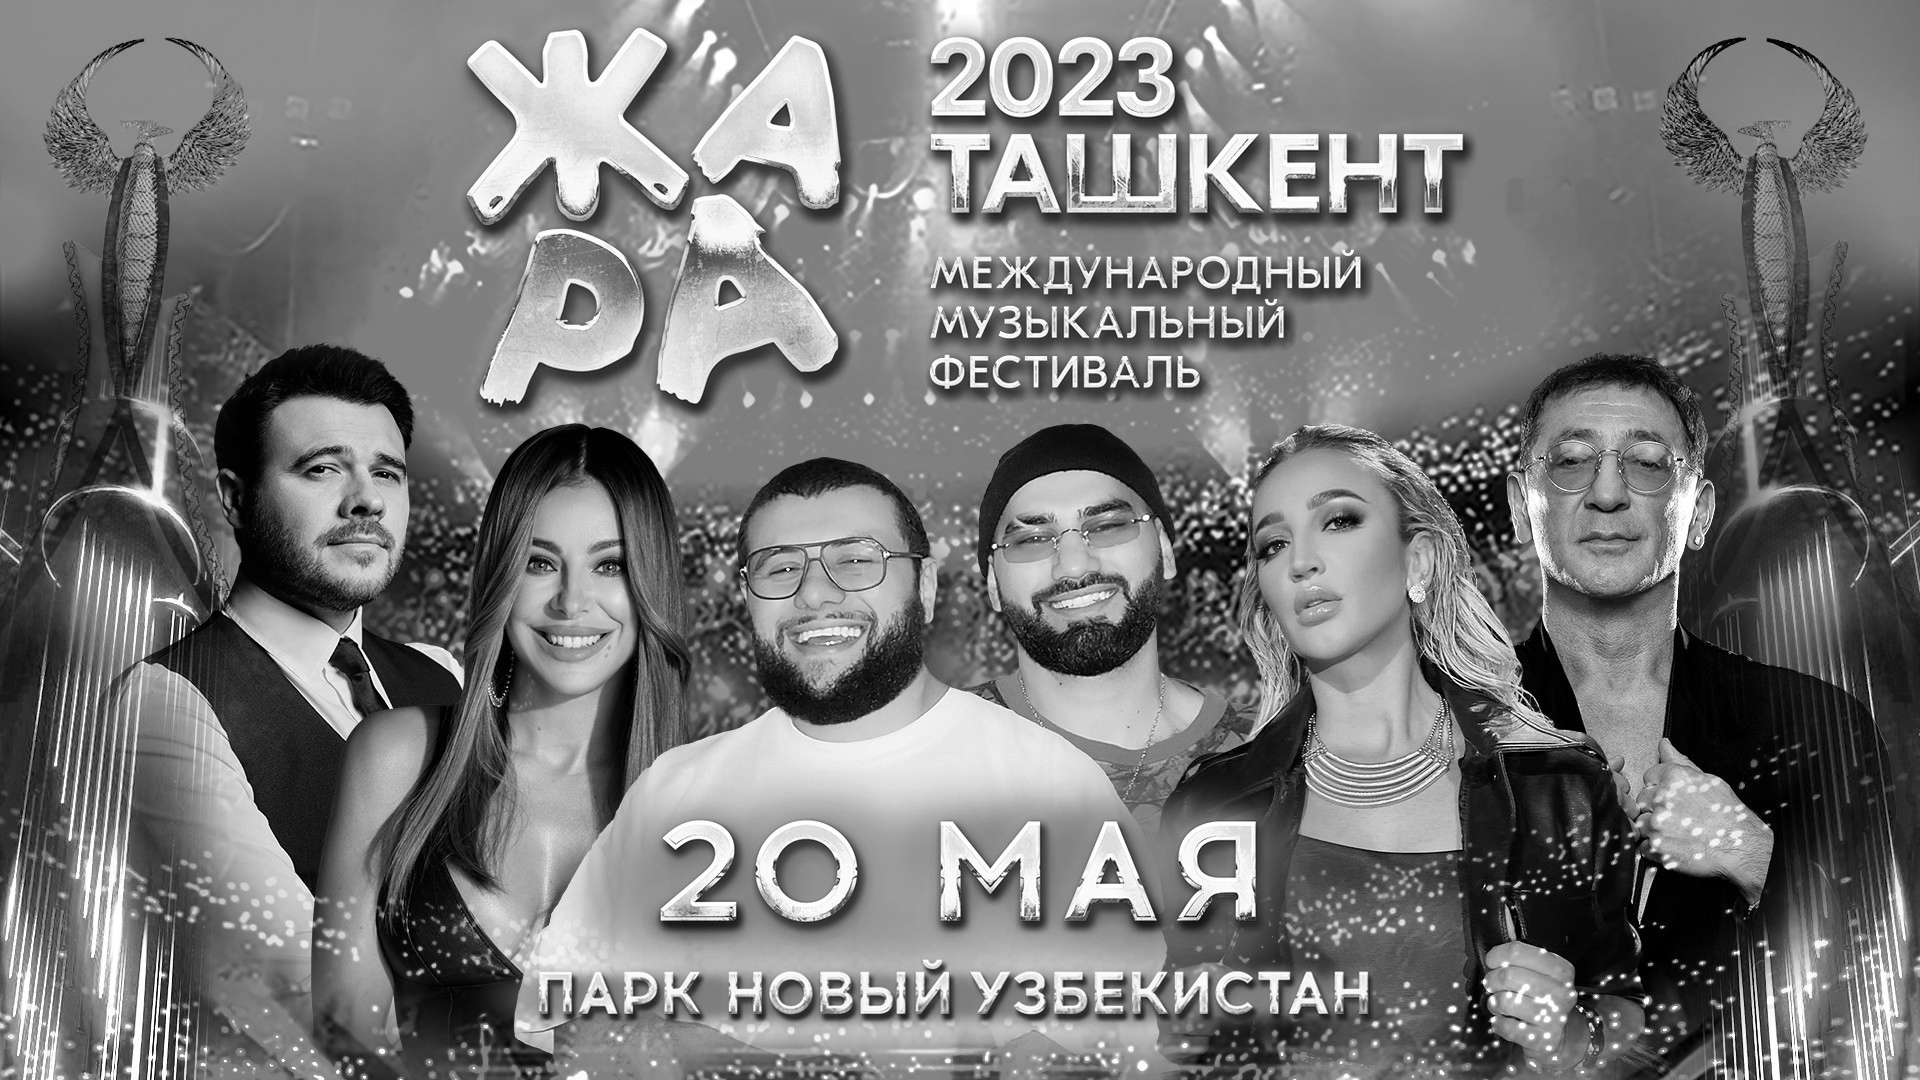 Фестиваль ЖАРА в Узбекистане отменят в связи с терактом в Санкт-Петербурге 